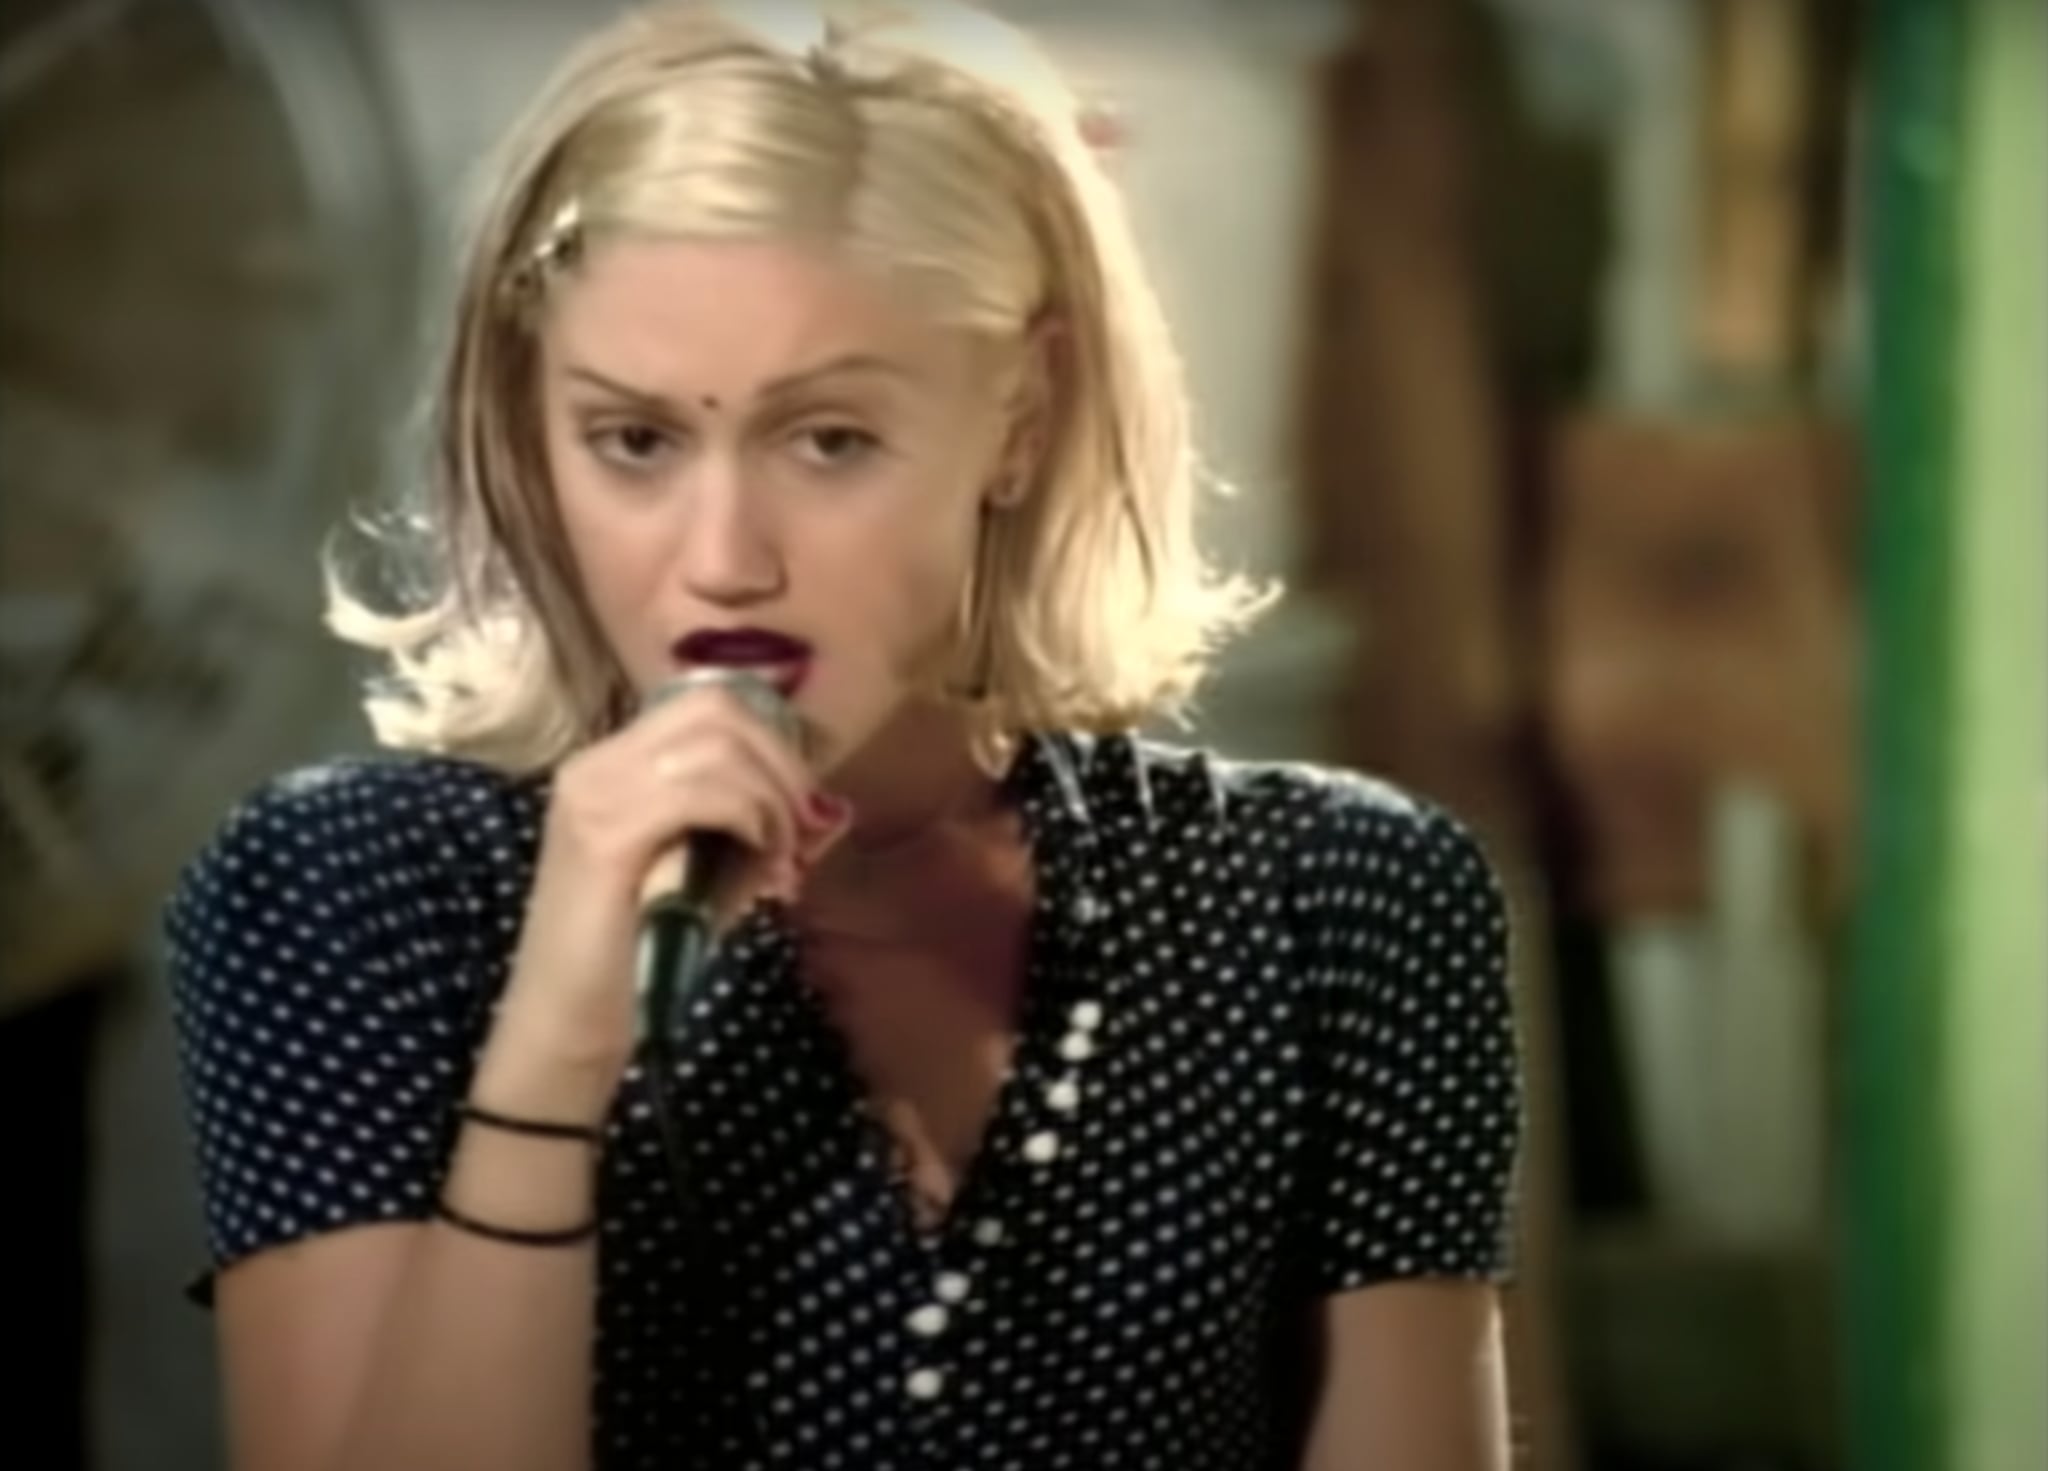 Gwen Stefani Rewears Her "Don't Speak" Music Video Dress | POPSUGAR Fashion